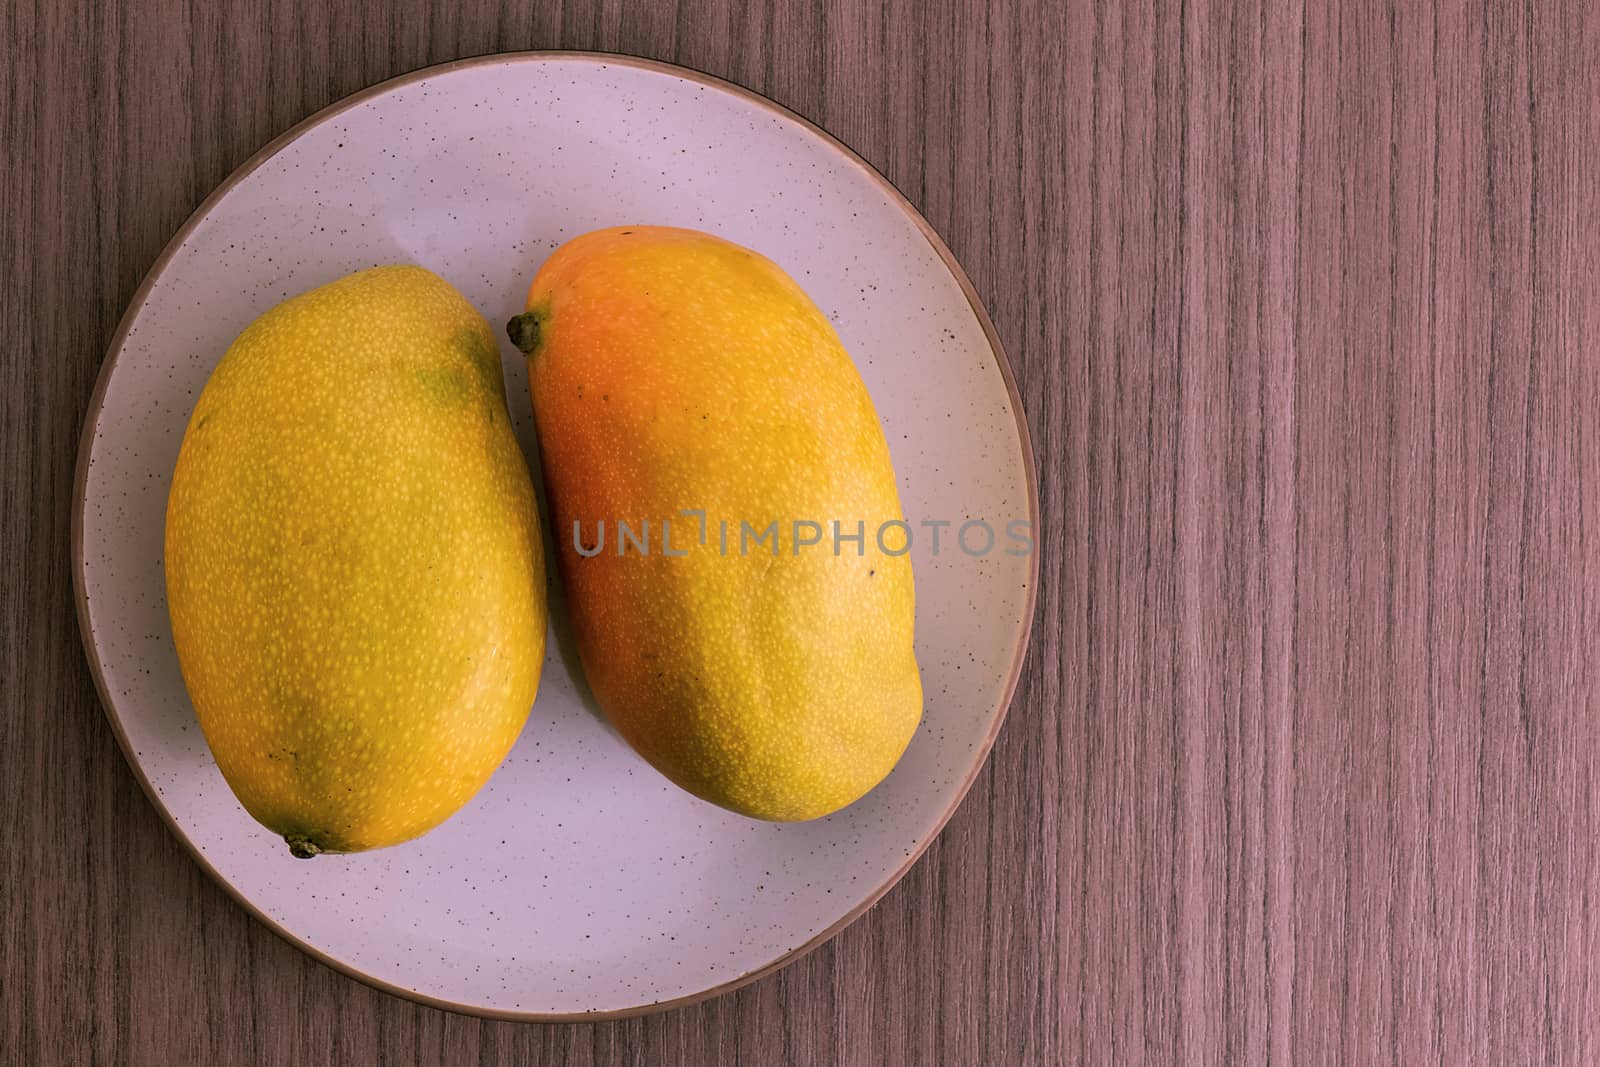 Two mangoes by dalomo84